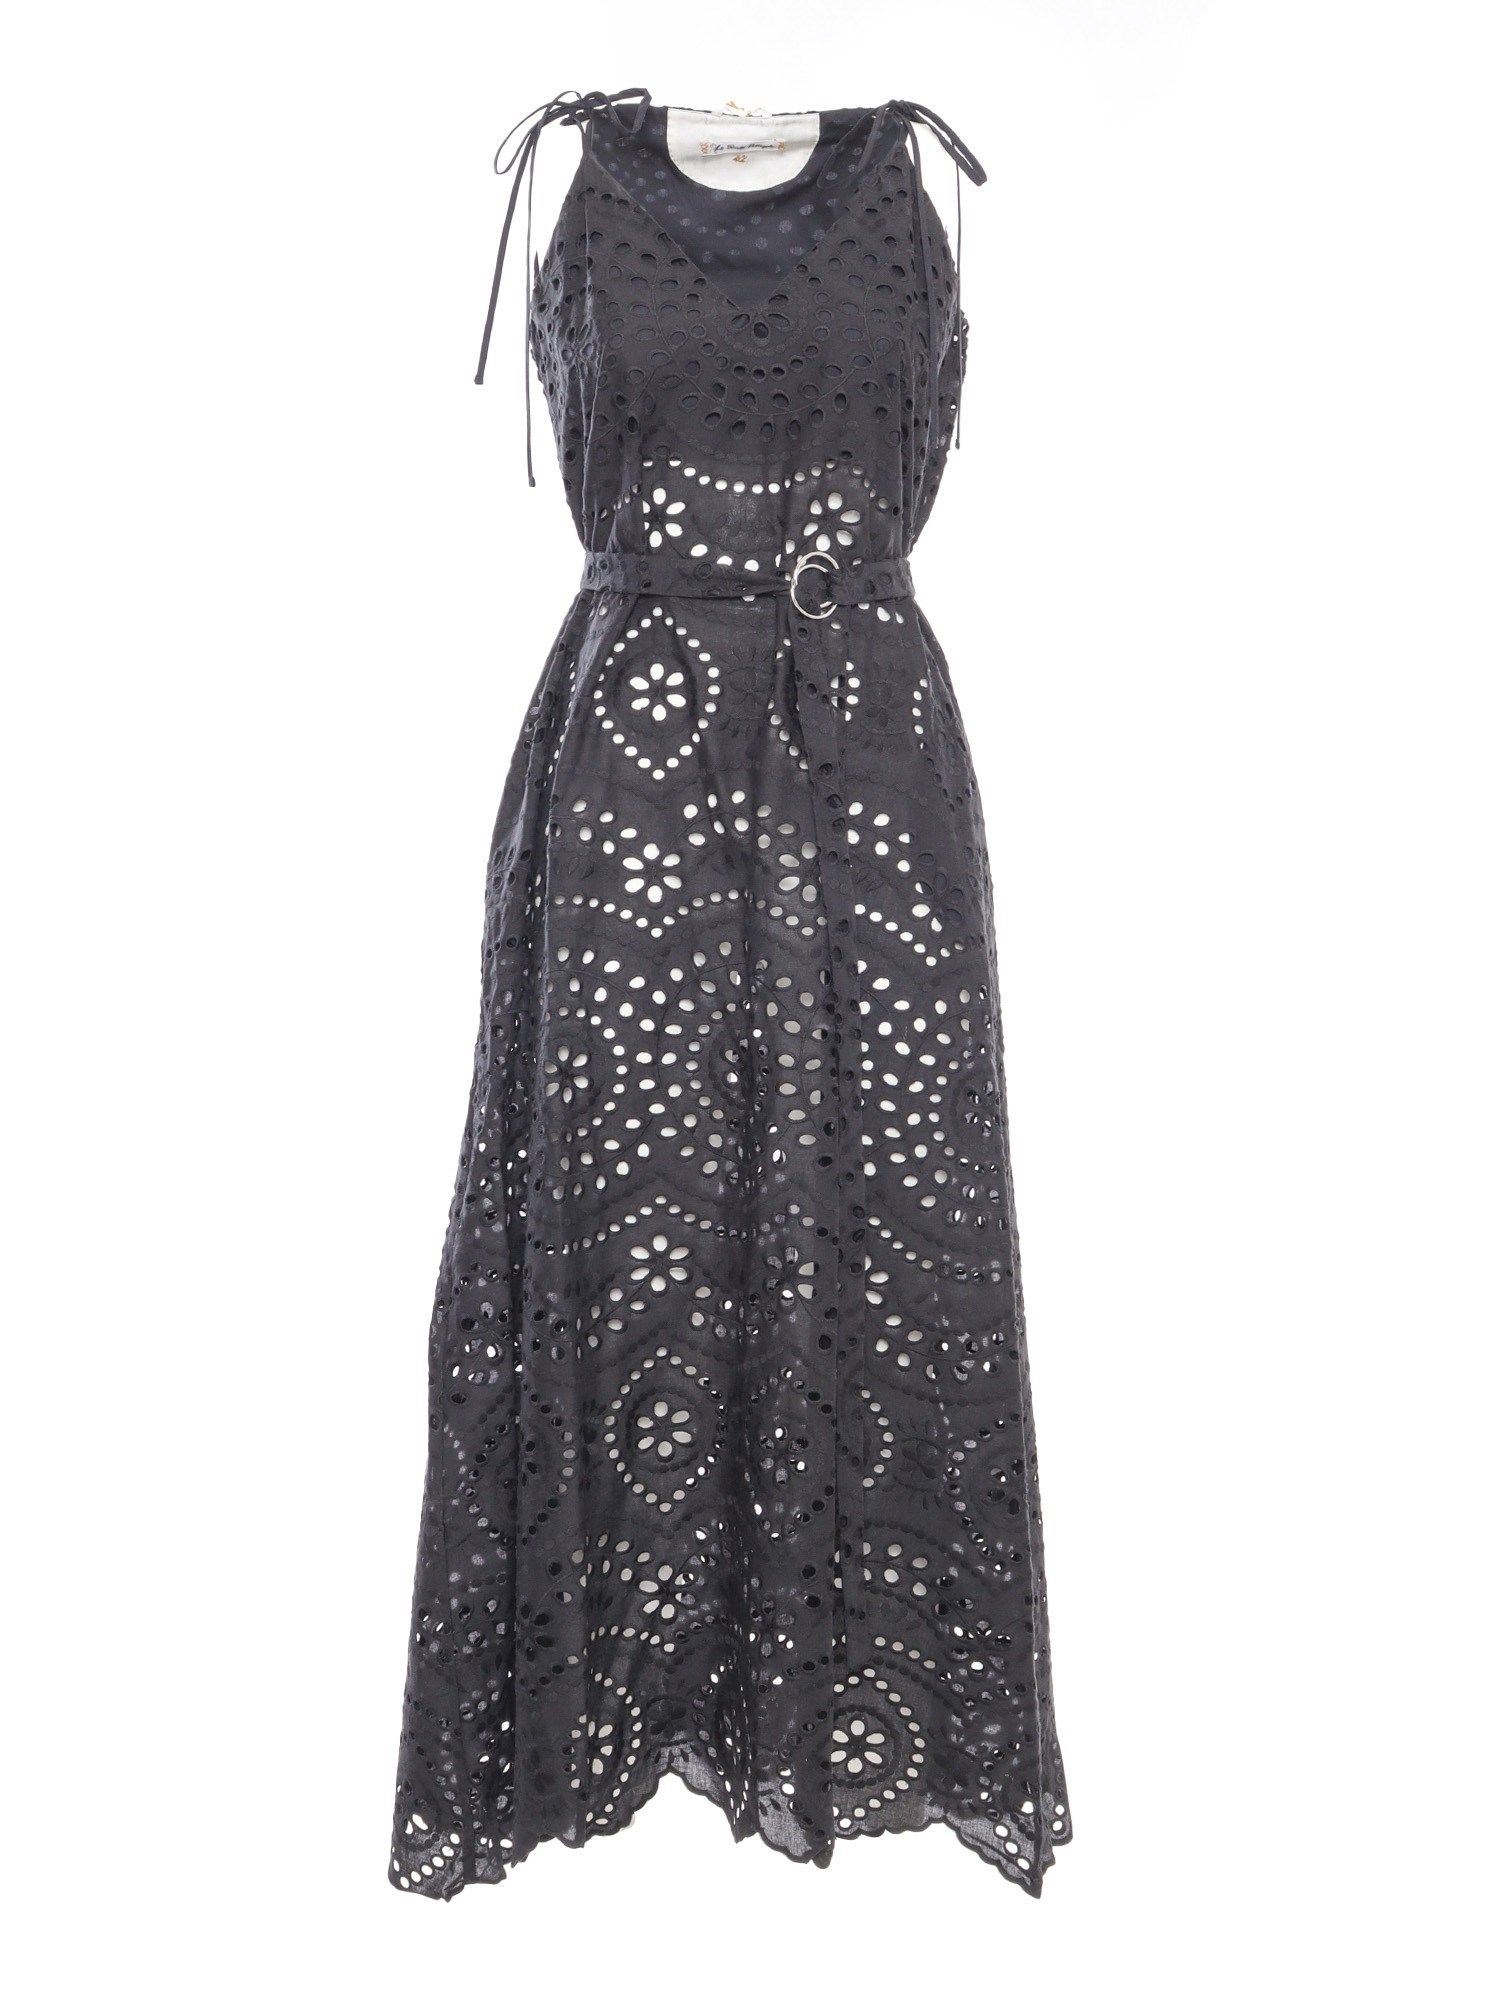 Le Sarte Pettegole Black Cotton Lace Dress